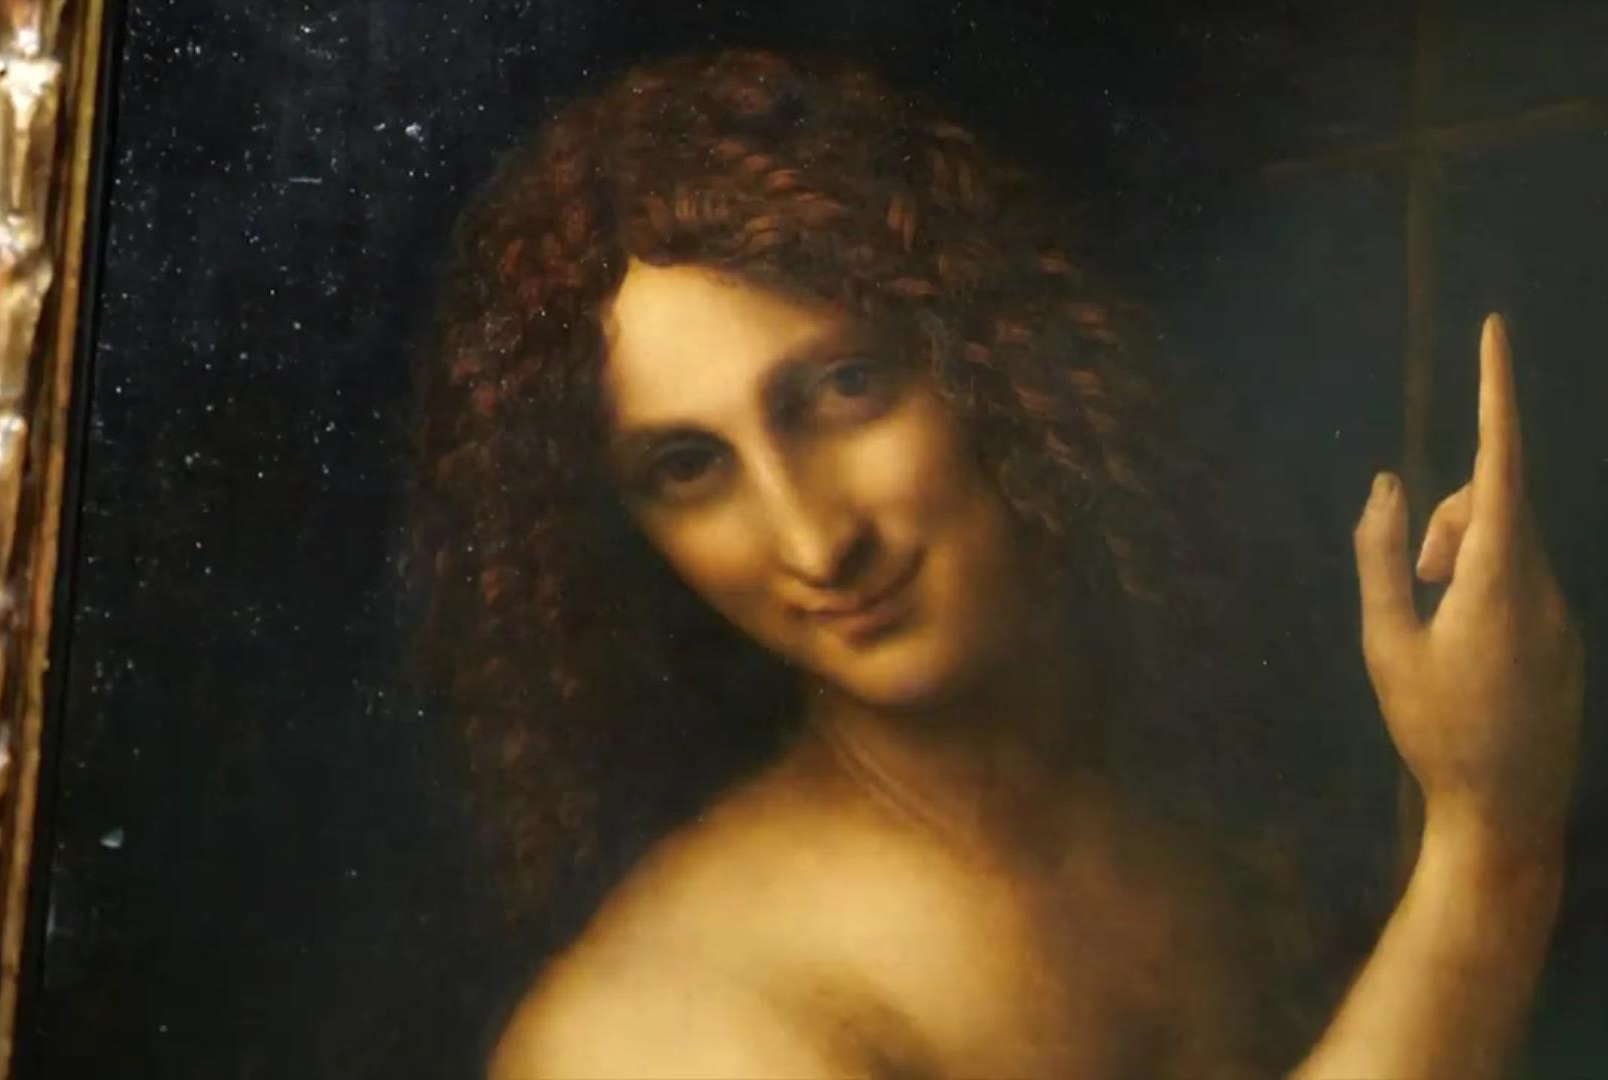 افتتاح أكبر معرض لأعمال ليوناردو دافنشي في باريس